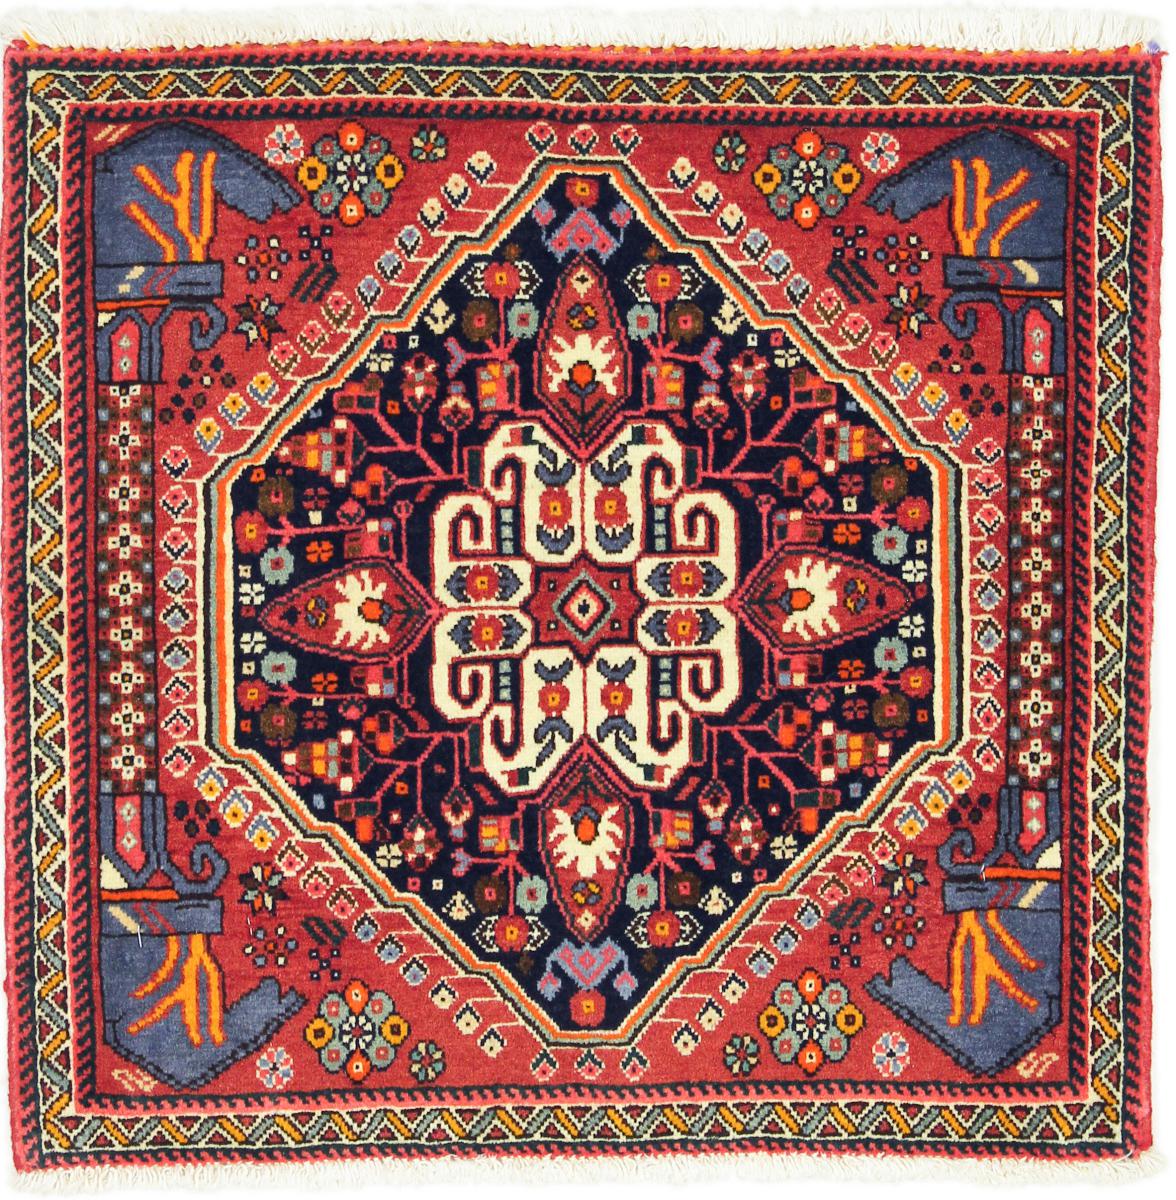 Perzisch tapijt Ghashghai 2'0"x2'1" 2'0"x2'1", Perzisch tapijt Handgeknoopte